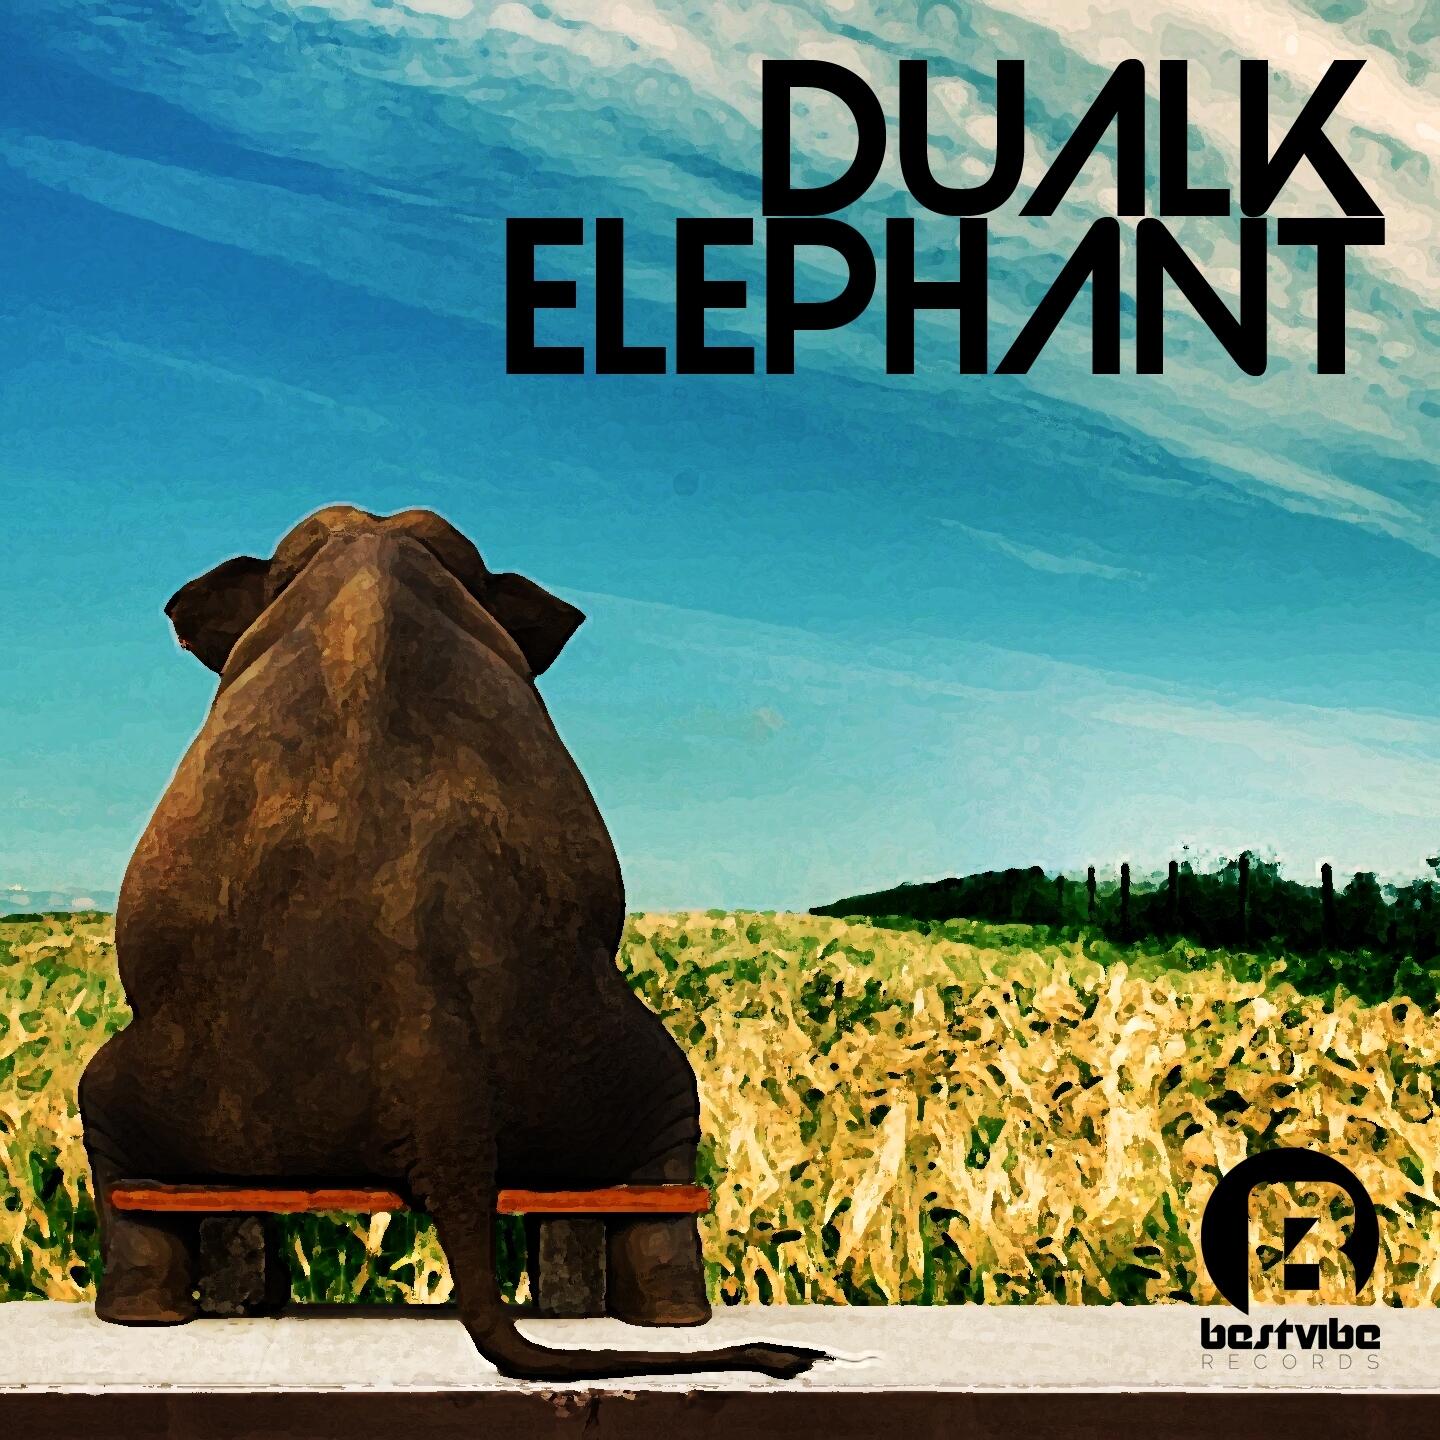 Elephant remix. Elephant Music альбом. Песня elefante. Слоны СЛУШАЮТ музыку. У какого музыкального альбома слон на обложке.